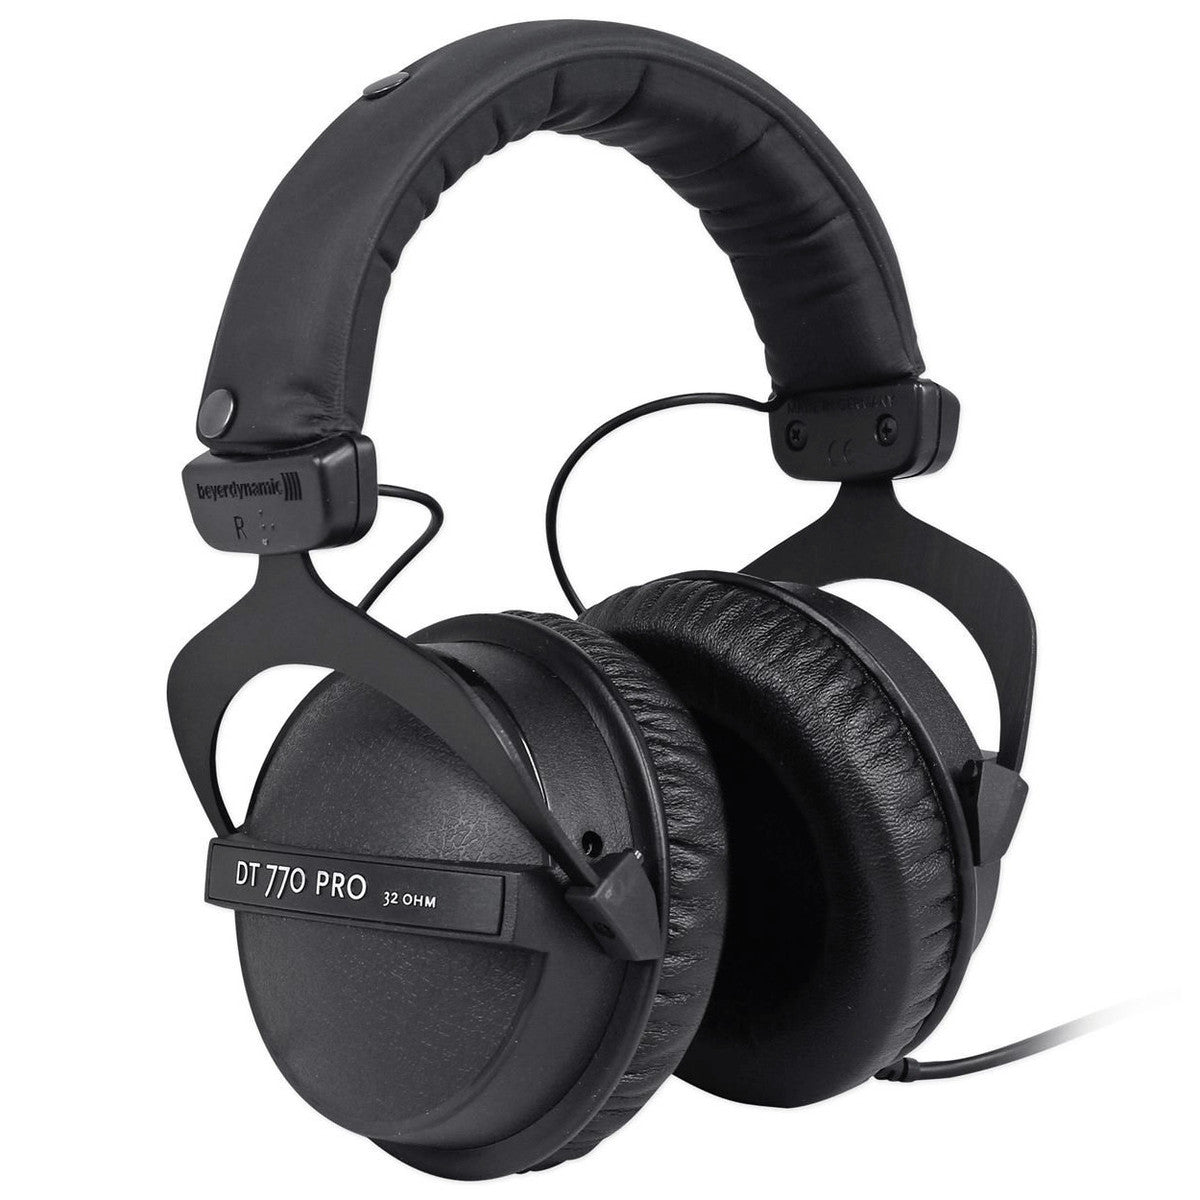 Comparativa: Audio Technica ATH-R70x y Beyerdynamic DT 990 PRO (250 Ohm) –